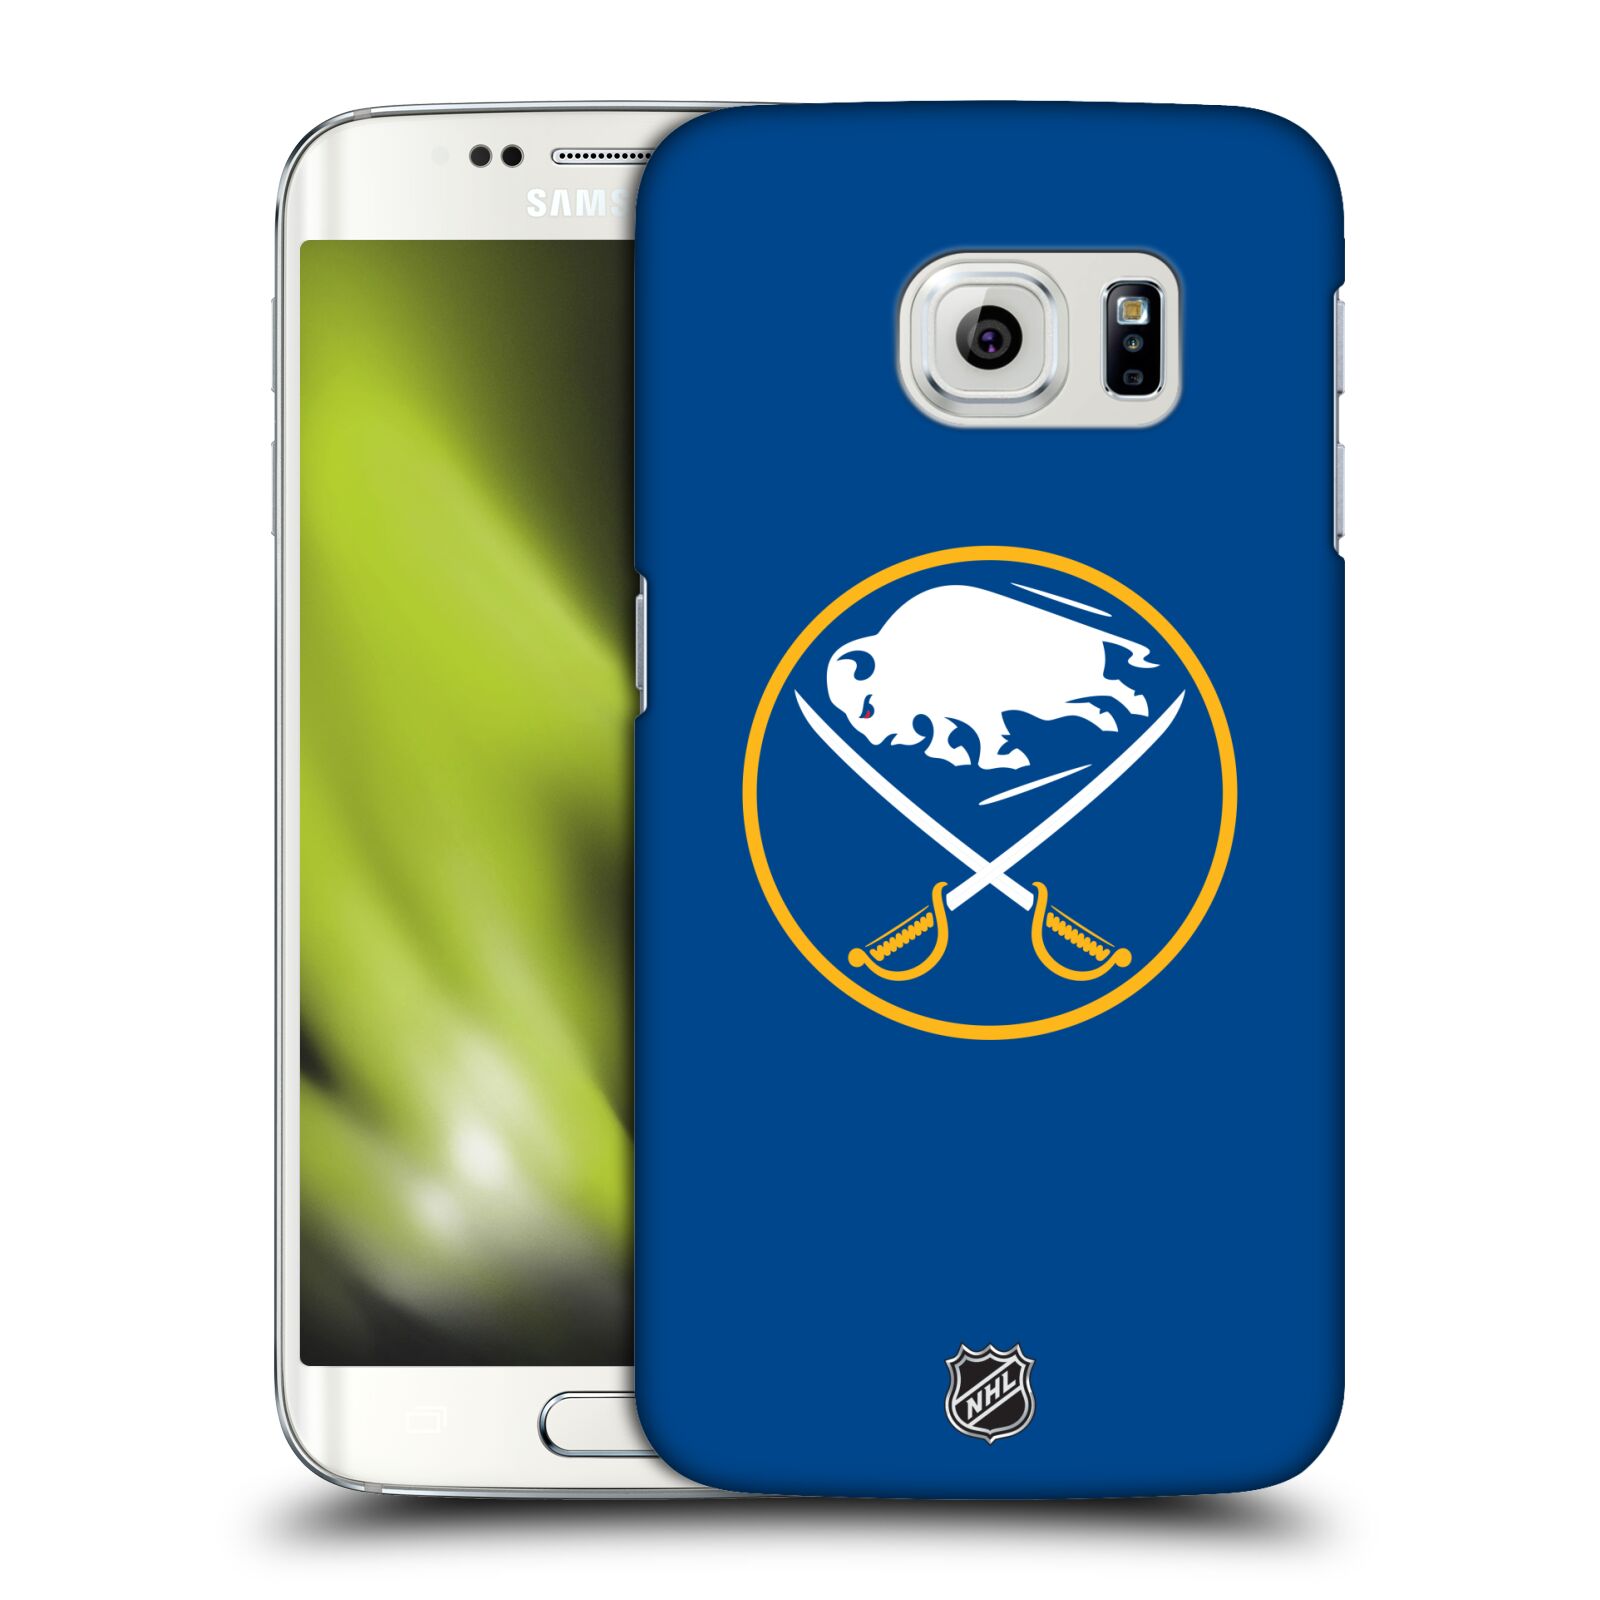 Pouzdro na mobil Samsung Galaxy S6 EDGE - HEAD CASE - Hokej NHL - Buffalo Sabres - modré pozadí